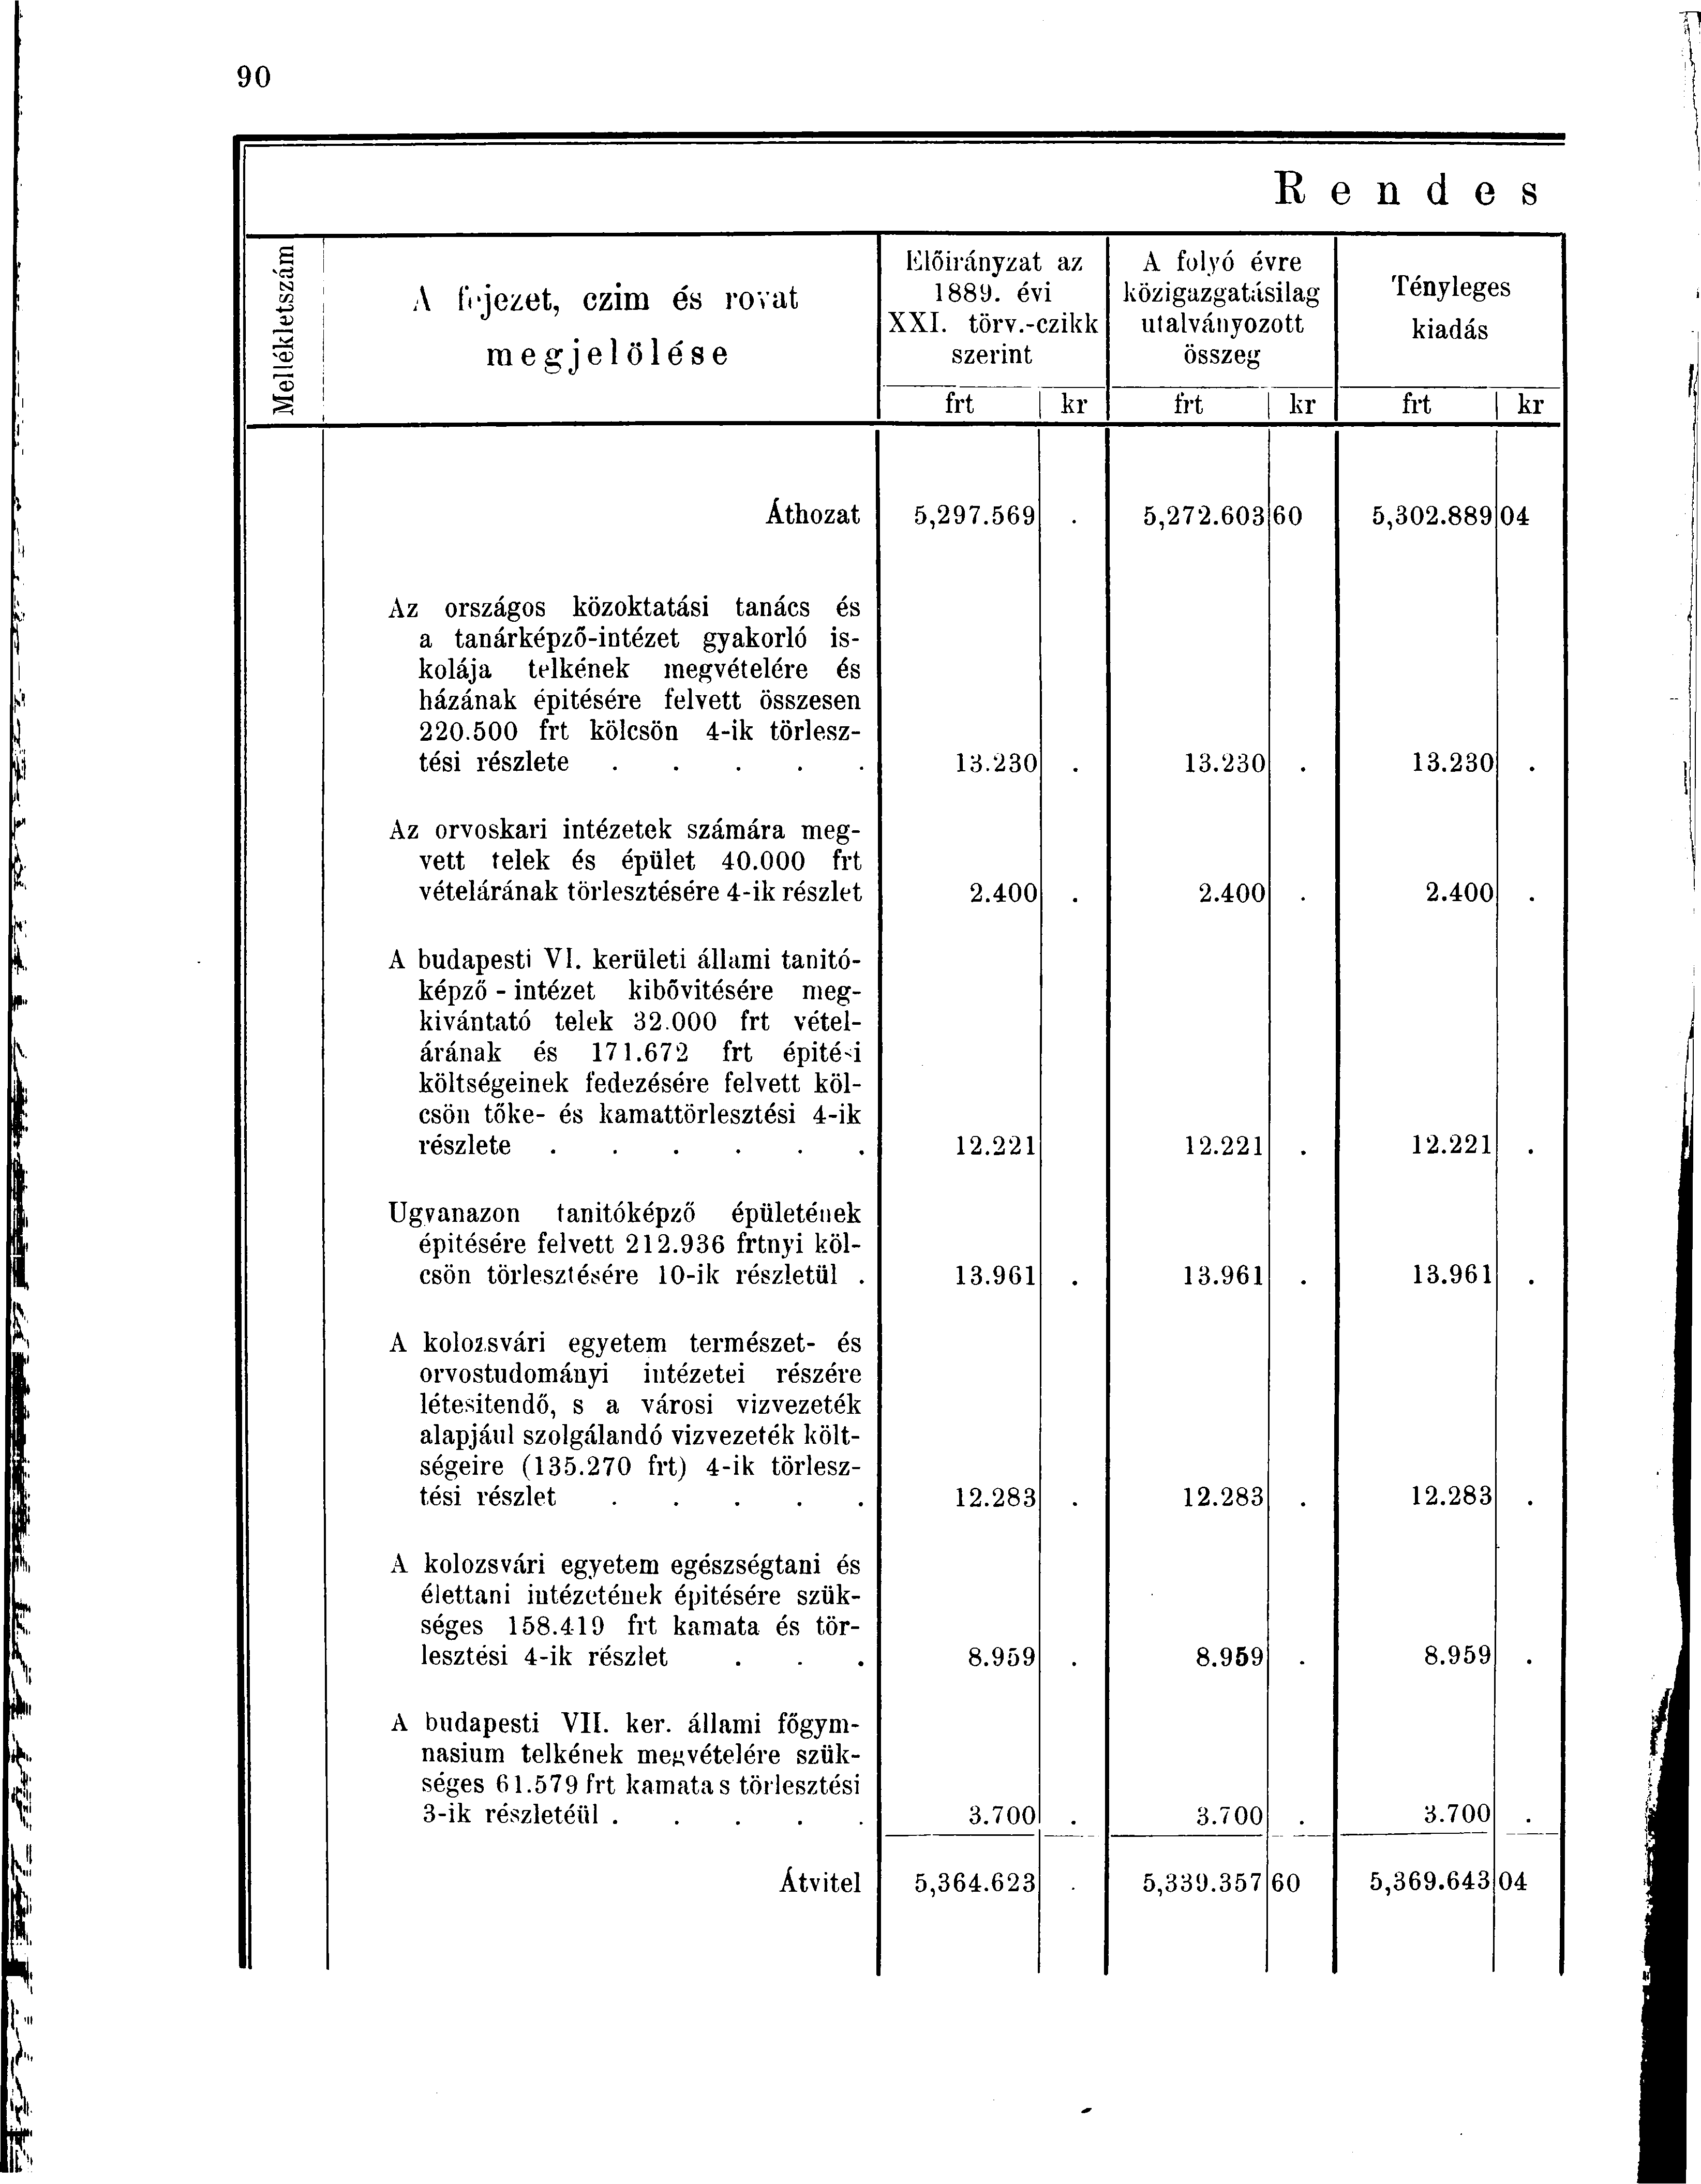 N ui -t-> A fejezet, czim és rovat raegjelölése Előirányzat az 1889. évi XXI. törv.